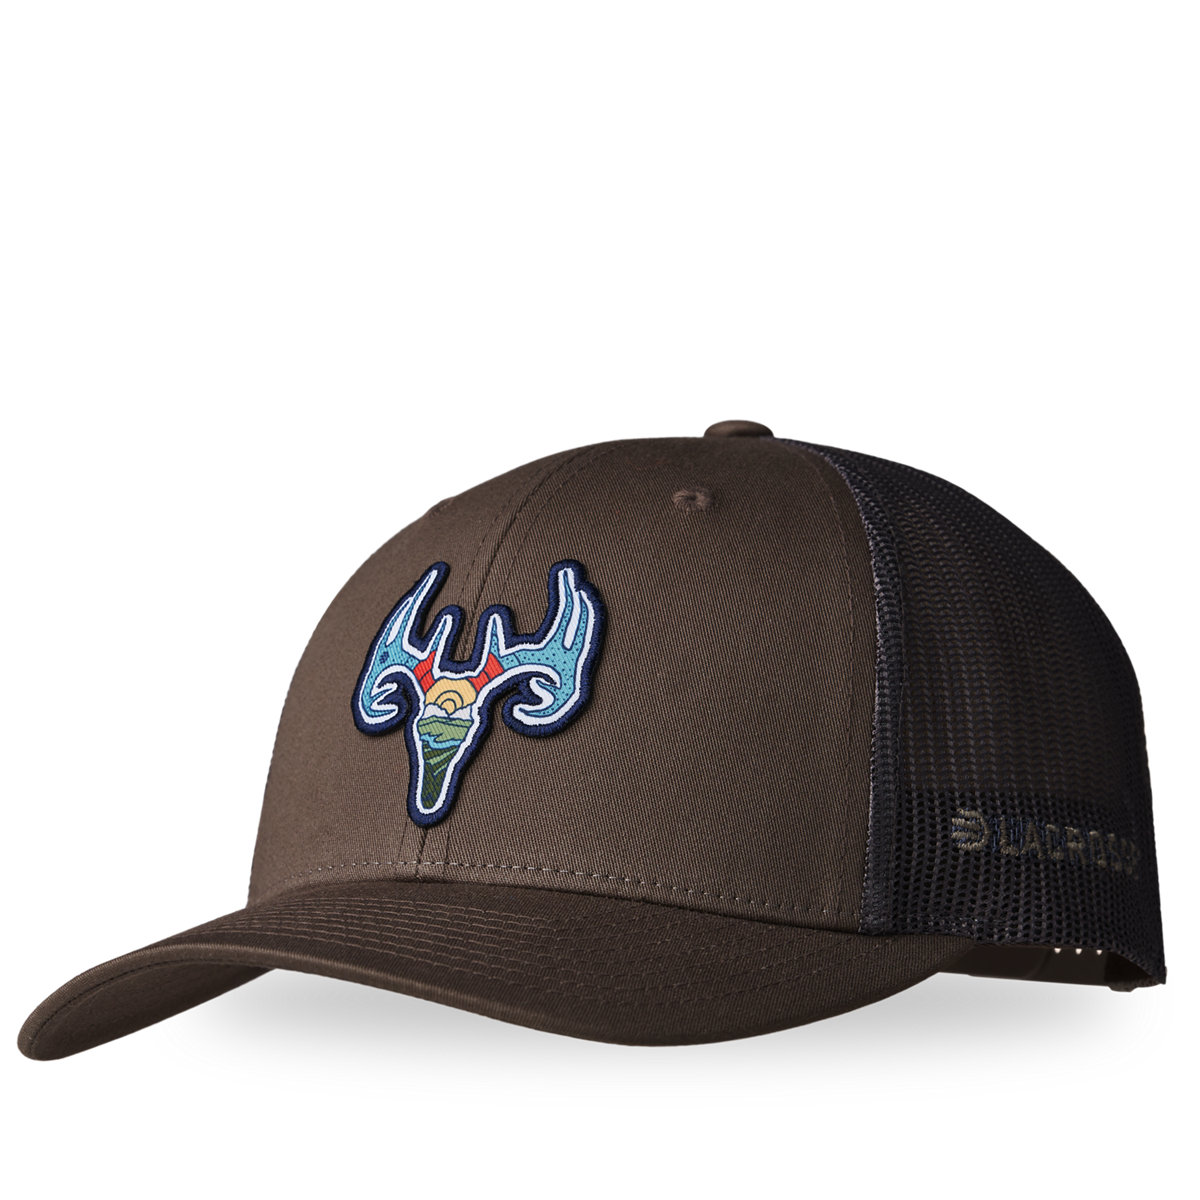 LaCrosse Footwear - - Hat Deer LaCrosse Trucker Choc Brown Chip/Grey